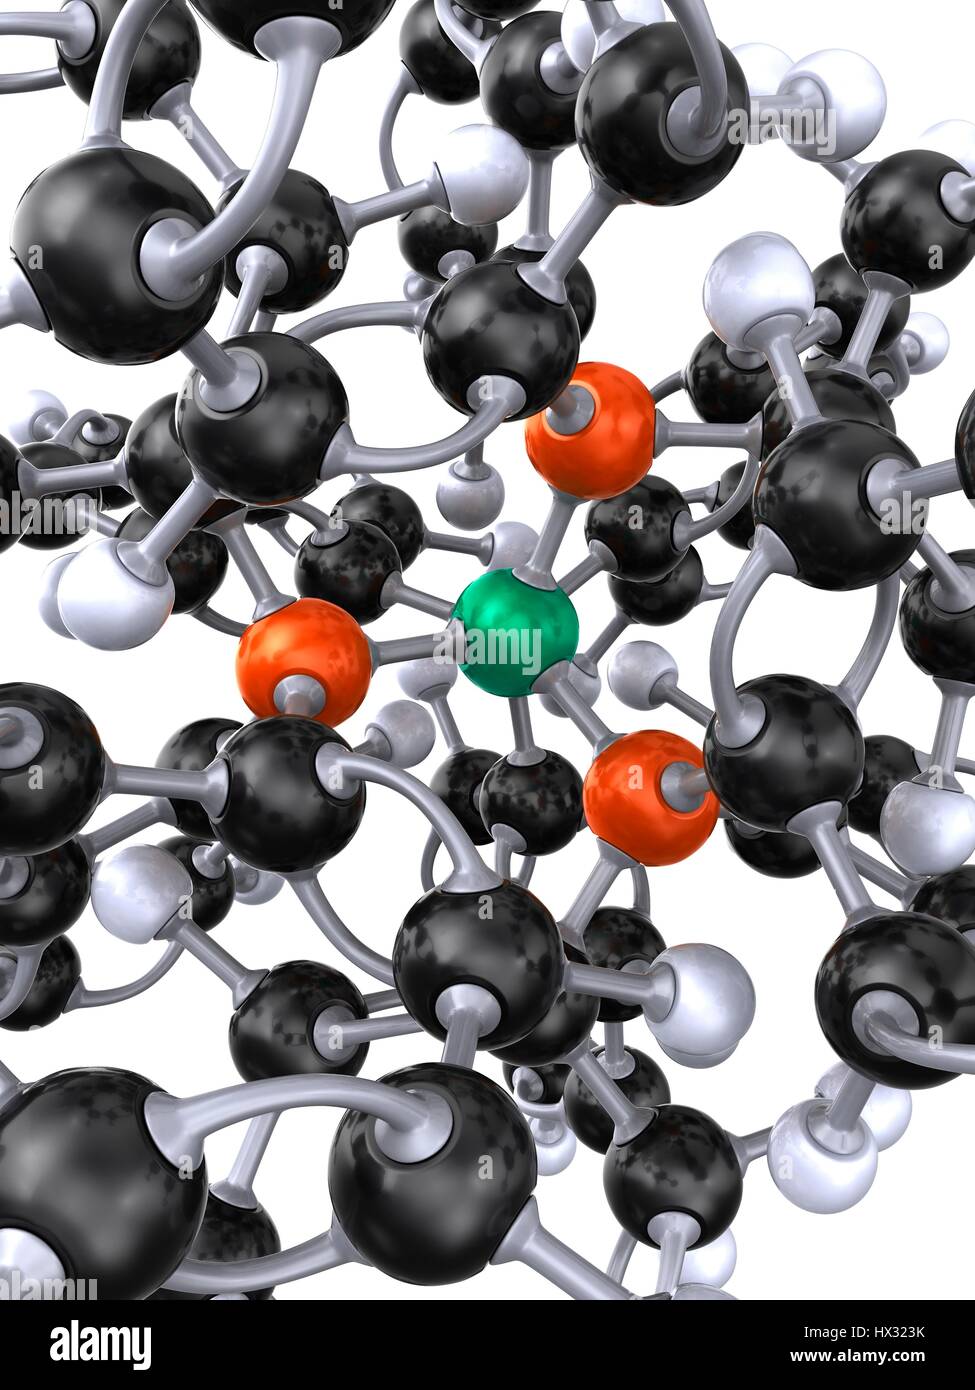 Detail der Ball und Stock 3D-Modell des tetrakis(triphenylphosphine)palladium(0) Molekül oder tetrakis(triphenylphosphine)platinum(0) Molekül. Atome sind farblich gekennzeichnet (Carbon - schwarz, Phosphor - rot, Palladium oder Platiunum - grün, Wasserstoff - weiß). PD habe ich als Katalysator für Palladium-katalysierte Kupplungsreaktionen. Anwendungen umfassen die Heck-Reaktion, Suzuki Negishi-Kupplung, Kupplung, Stille-Kupplung und Sonogashira-Kupplung. Stockfoto